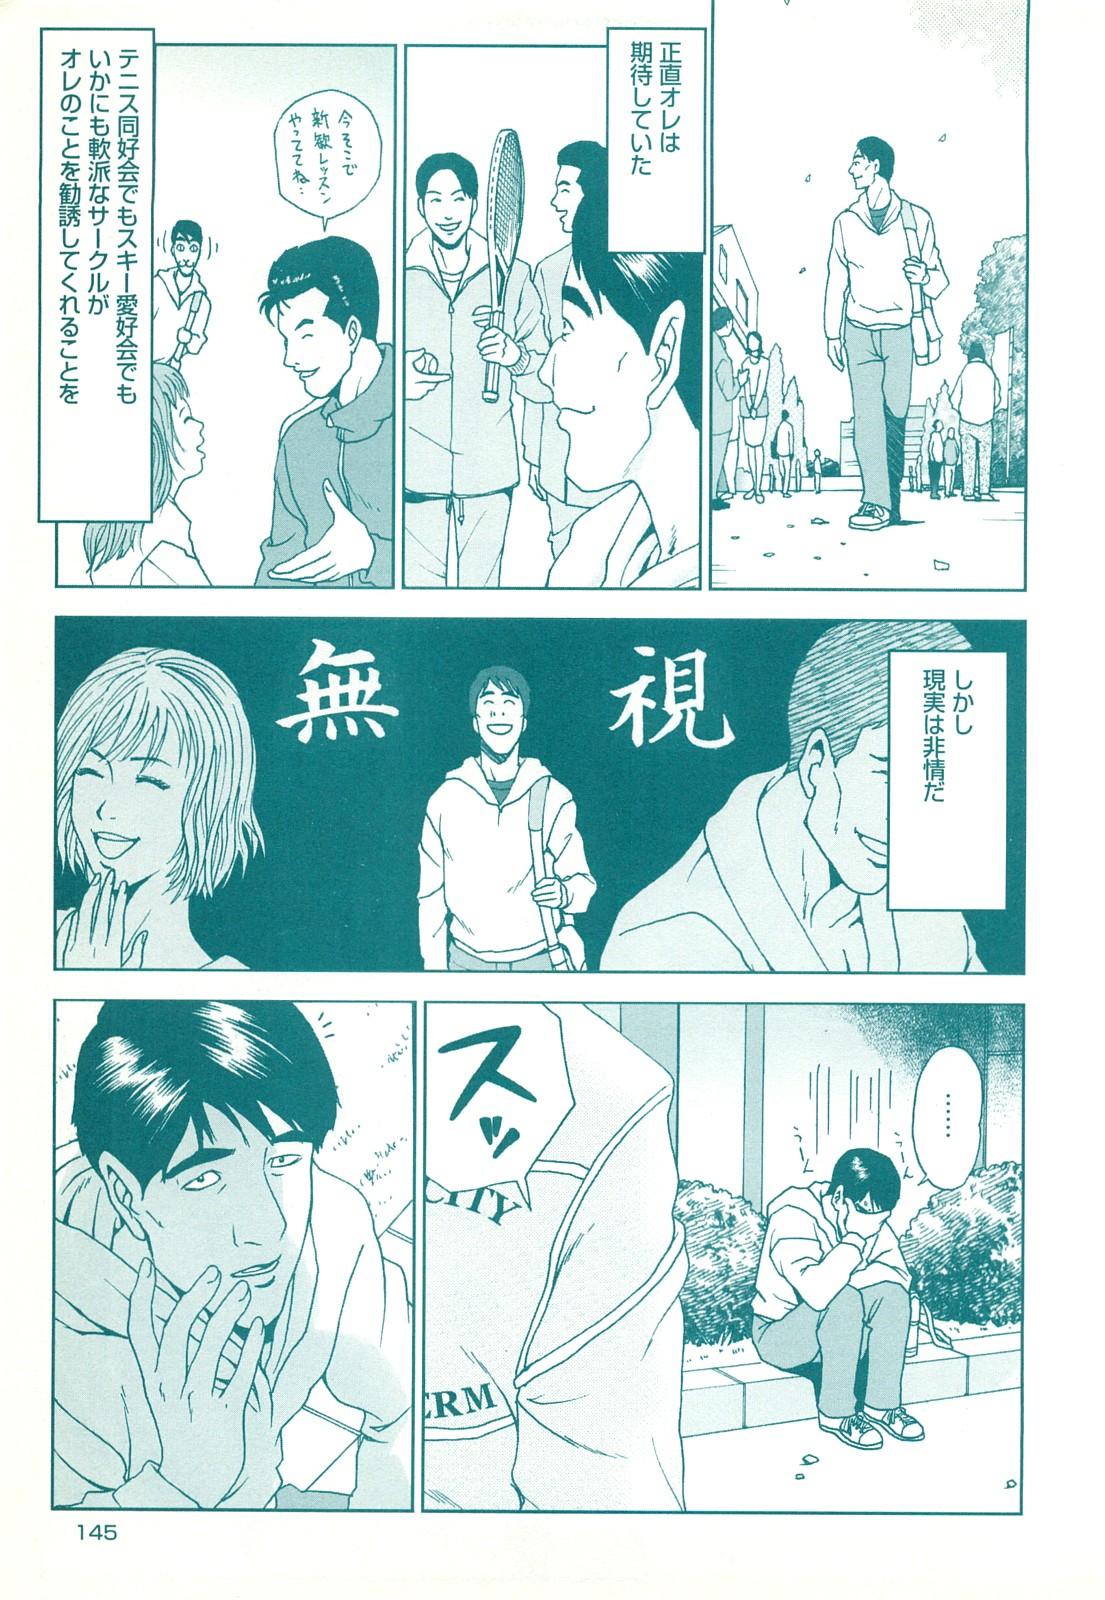 コミック裏モノJAPAN Vol.18 今井のりたつスペシャル号 144